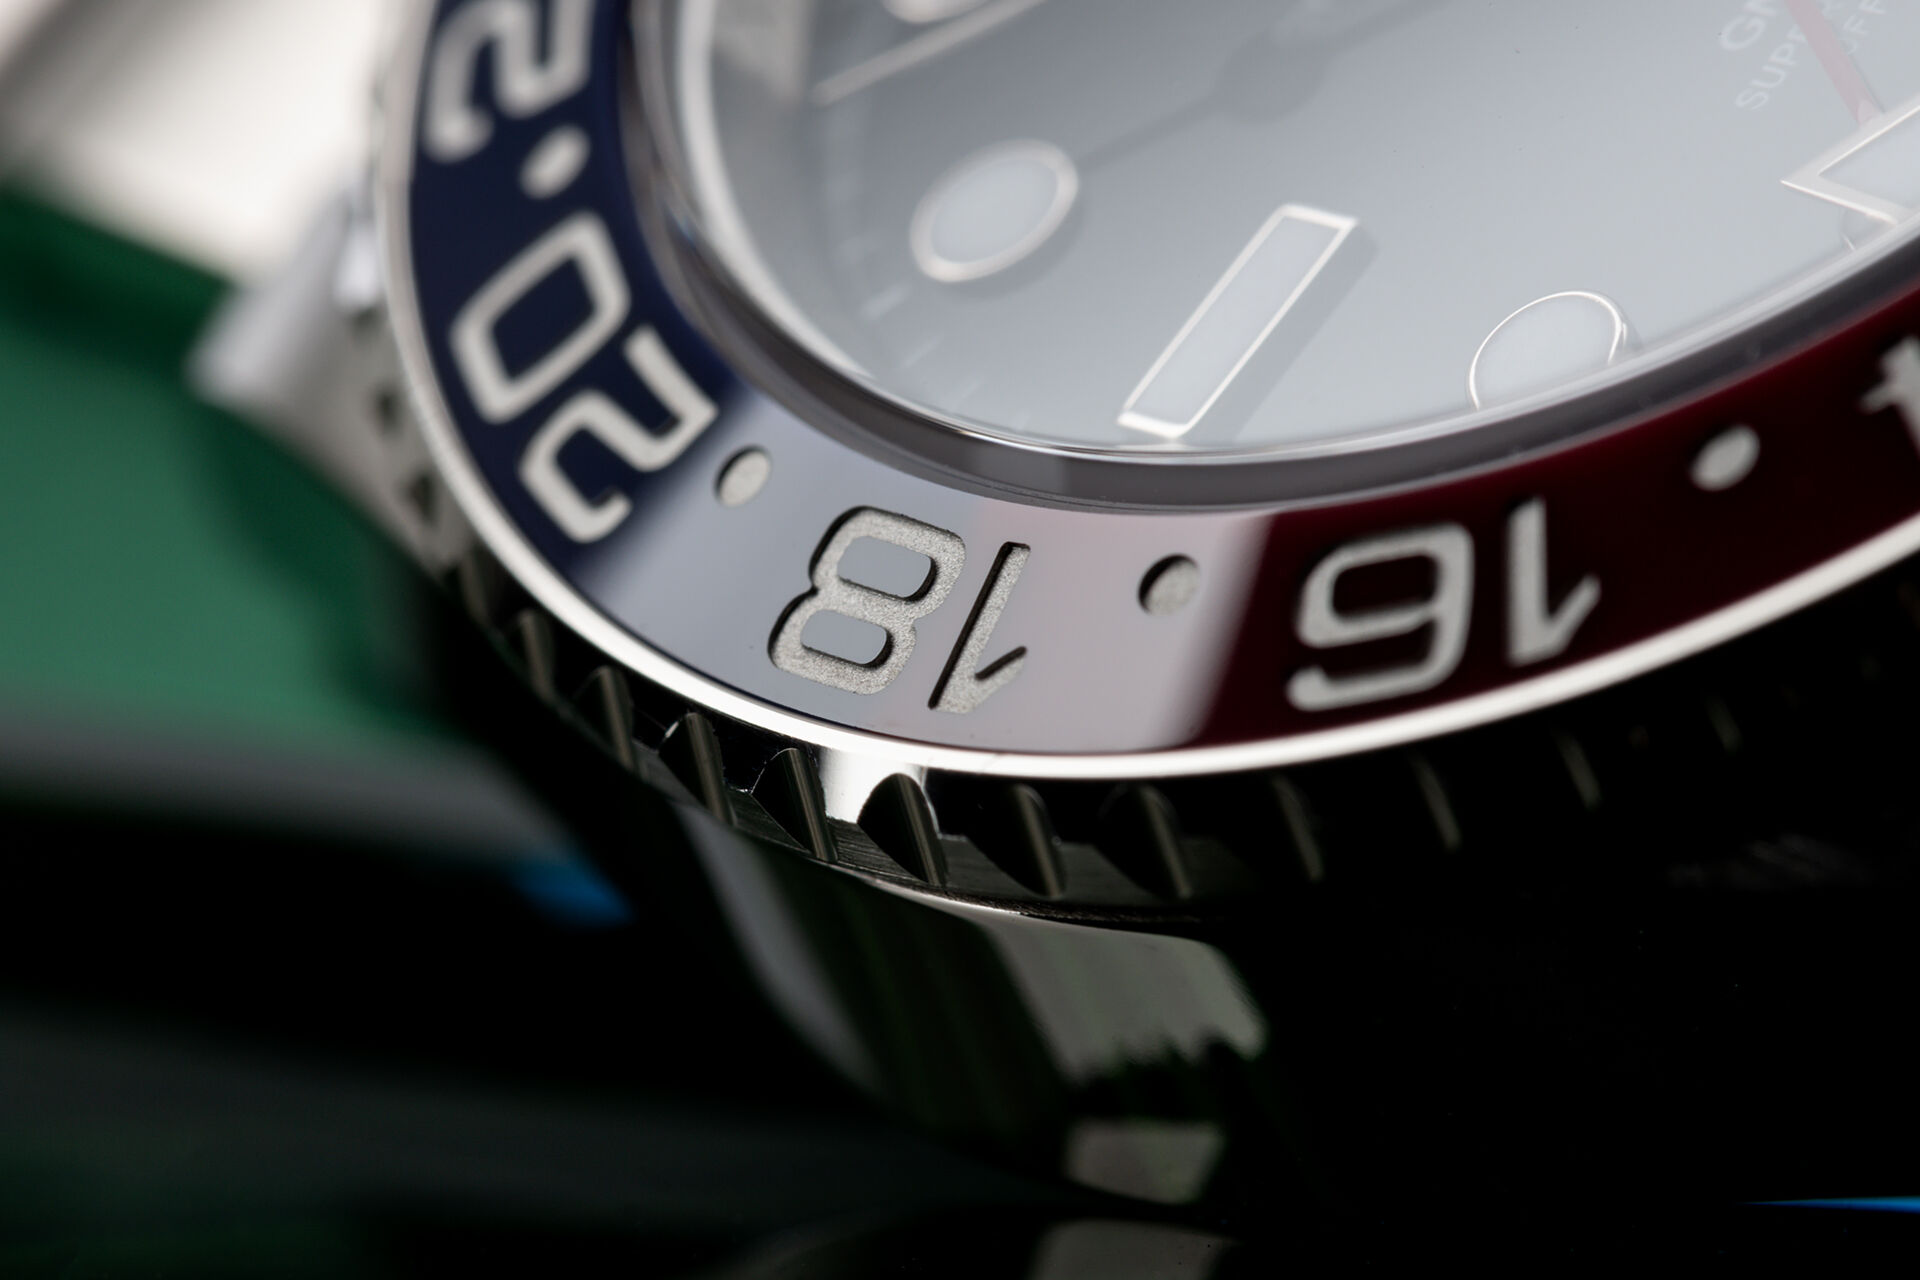 ref 116719BLRO | 'Brand New Condition' | Rolex GMT-Master II